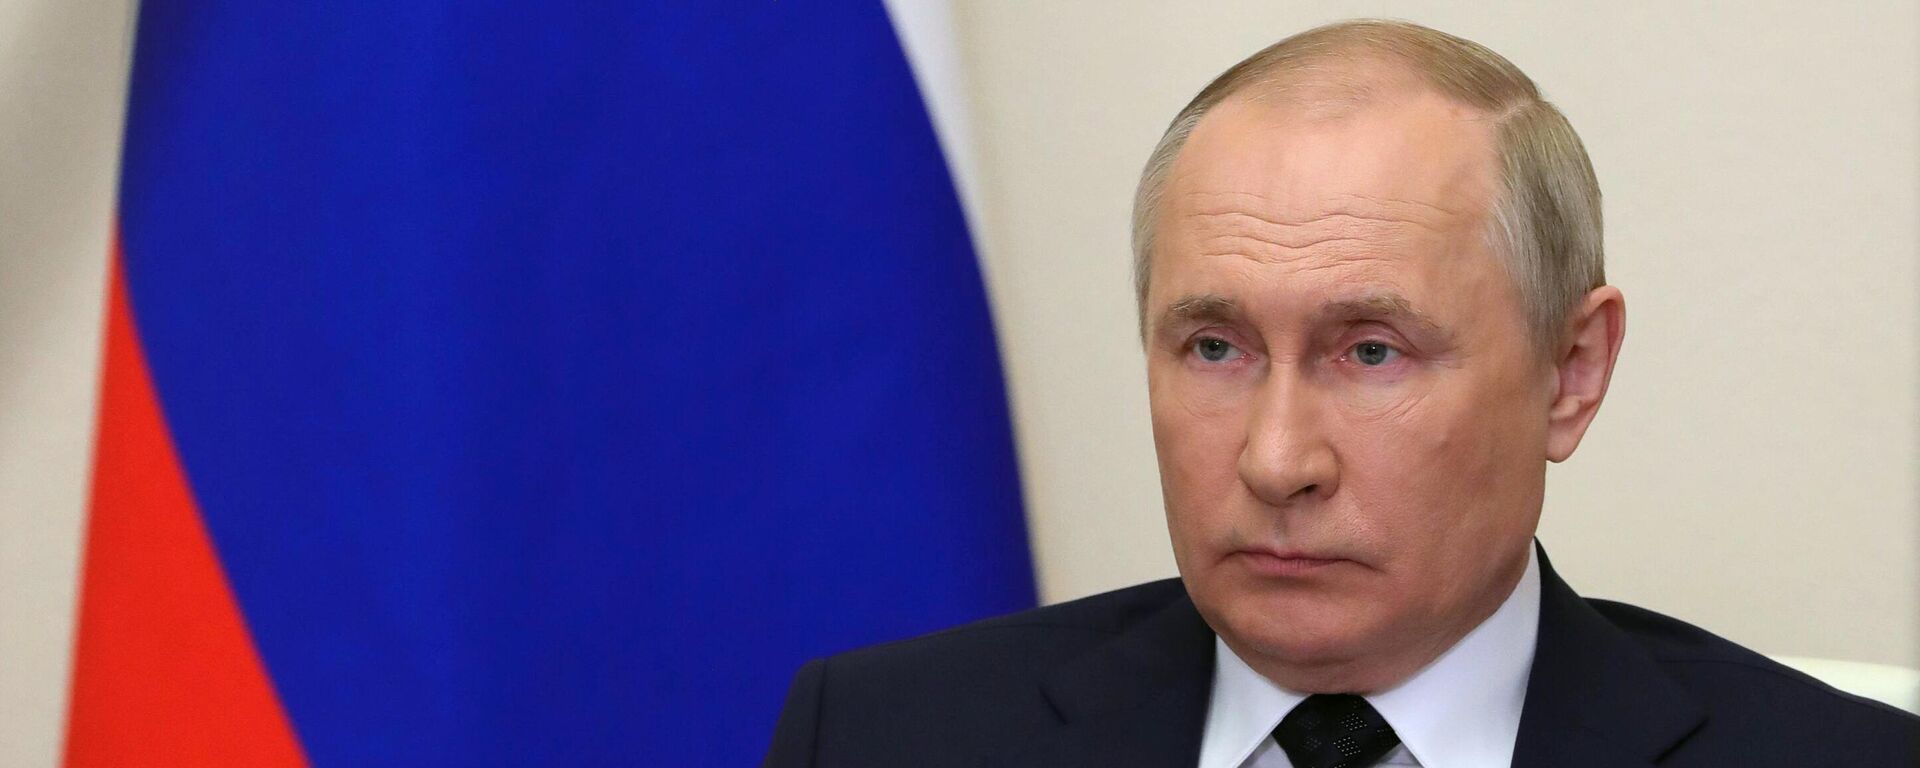 Путин: действующие контракты по газу будут остановлены, если за него не заплатят в рублях - Sputnik Казахстан, 1920, 31.03.2022